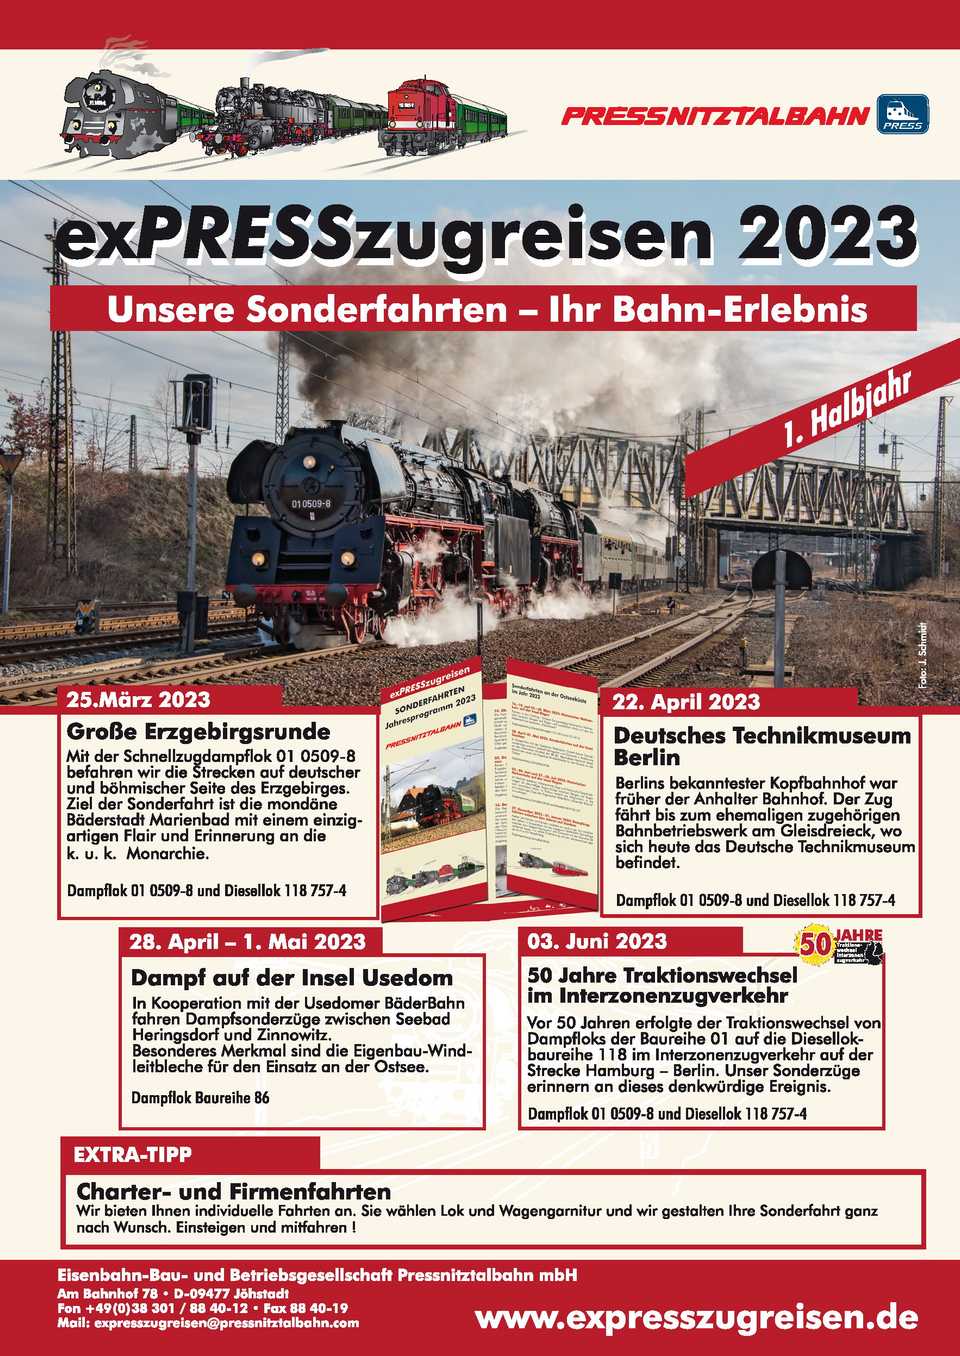 Veranstaltungsankündigung: exPRESSzugreisen 2023: Unsere Sonderfahrten - Ihr Bahn-Erlebnis